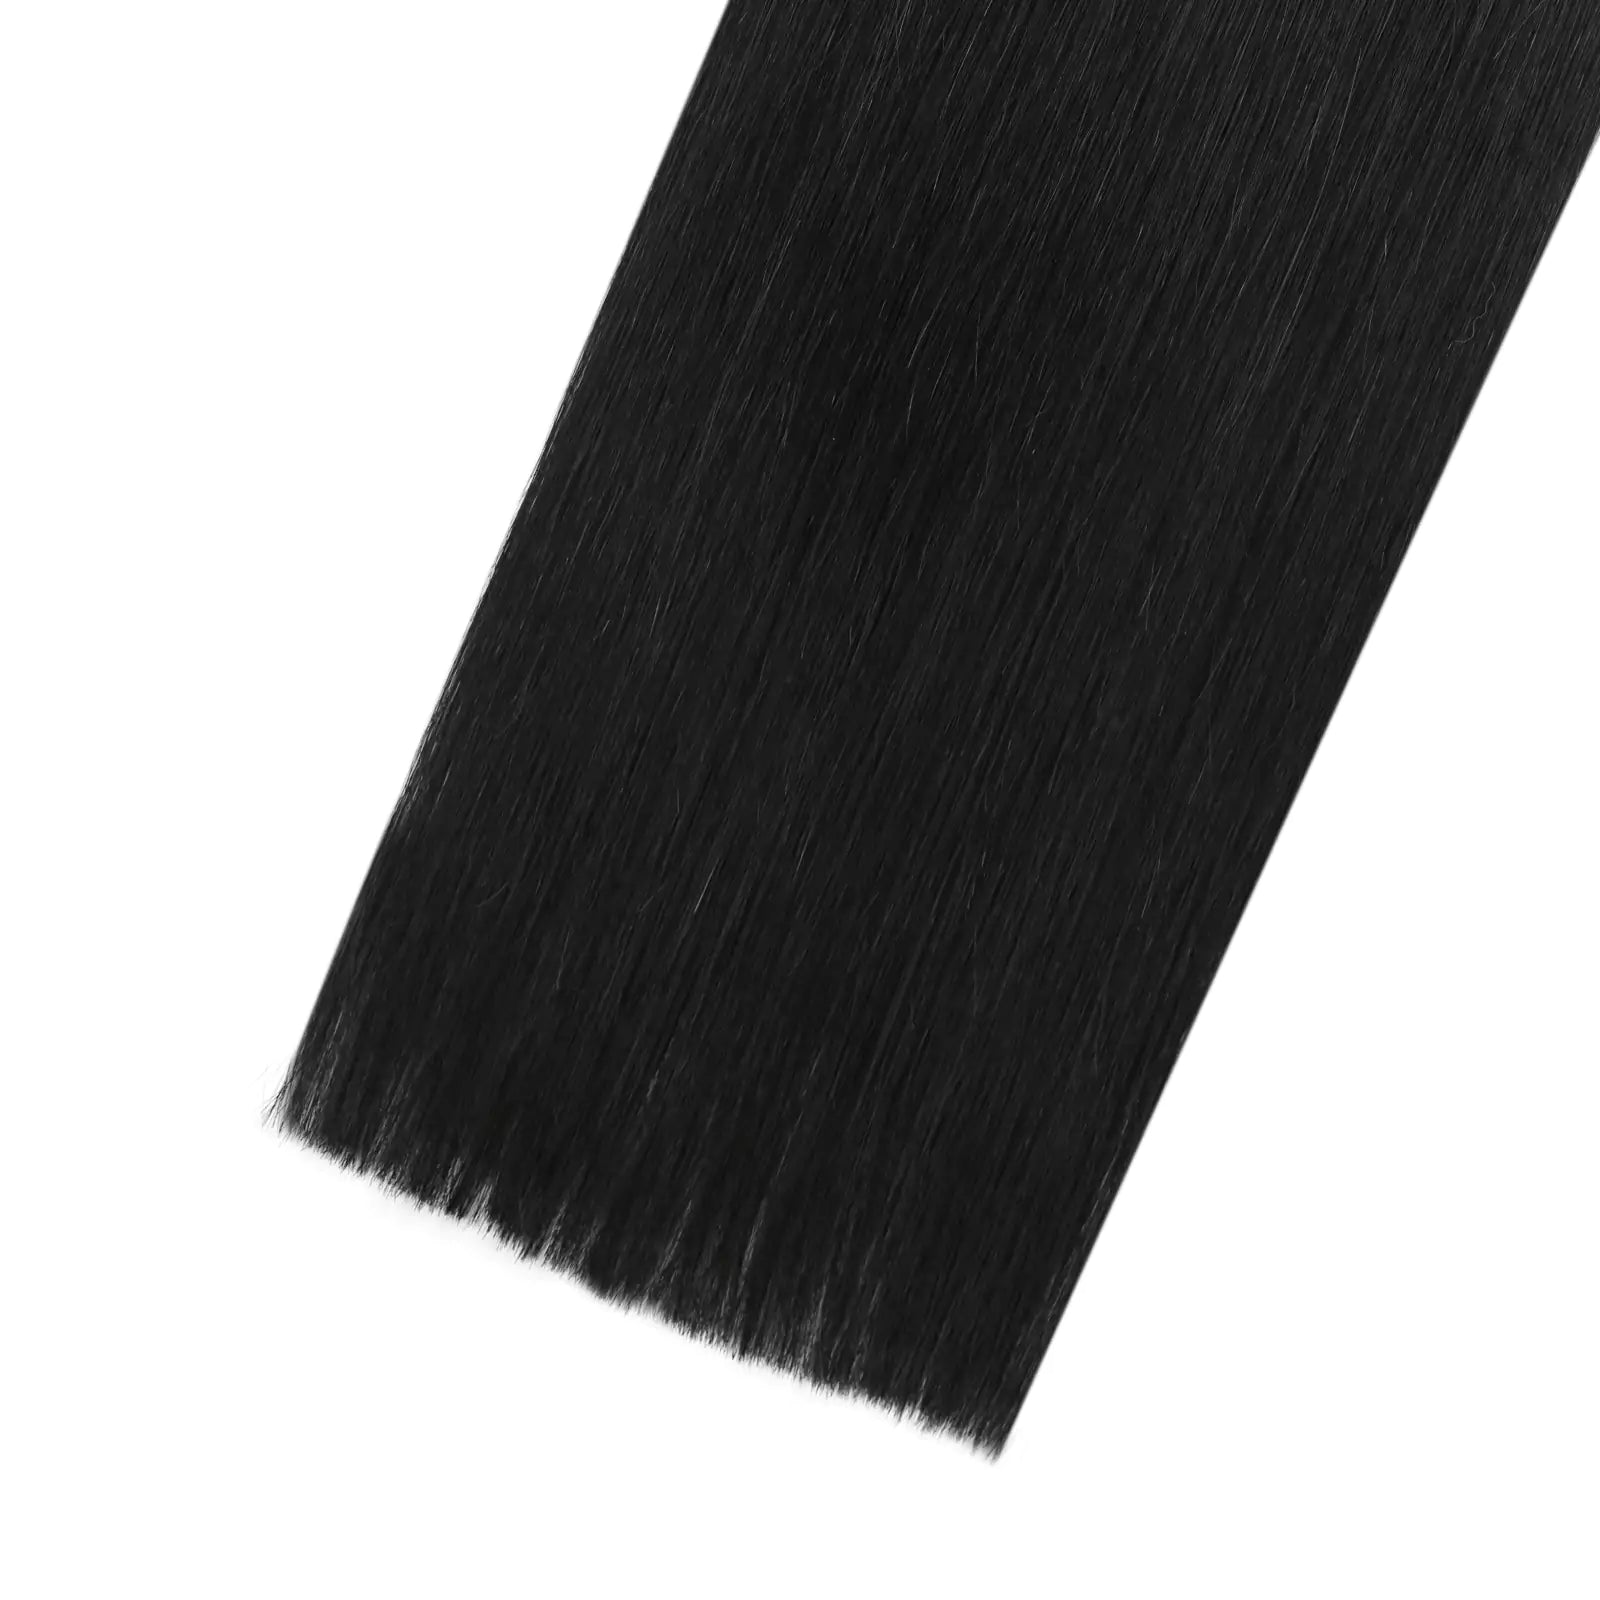 virgin k tip hair extensions vendors wholesale Jet Black Color